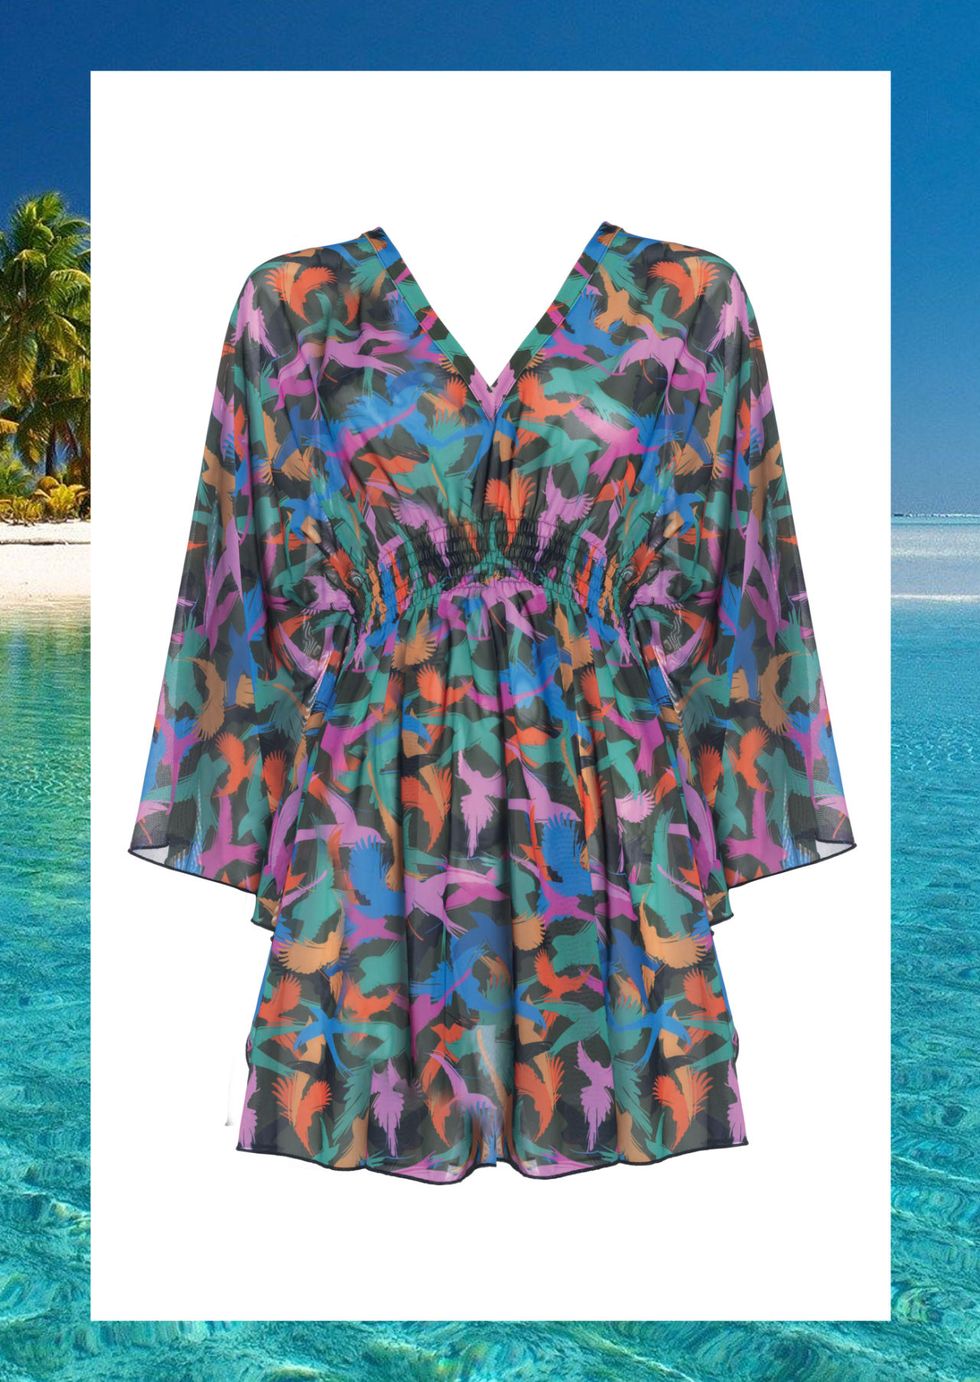 I caftani colorati o monocolore più belli e di tendenza per la moda mare 2017 da sfoggiare in spiaggia per essere super trendy.  